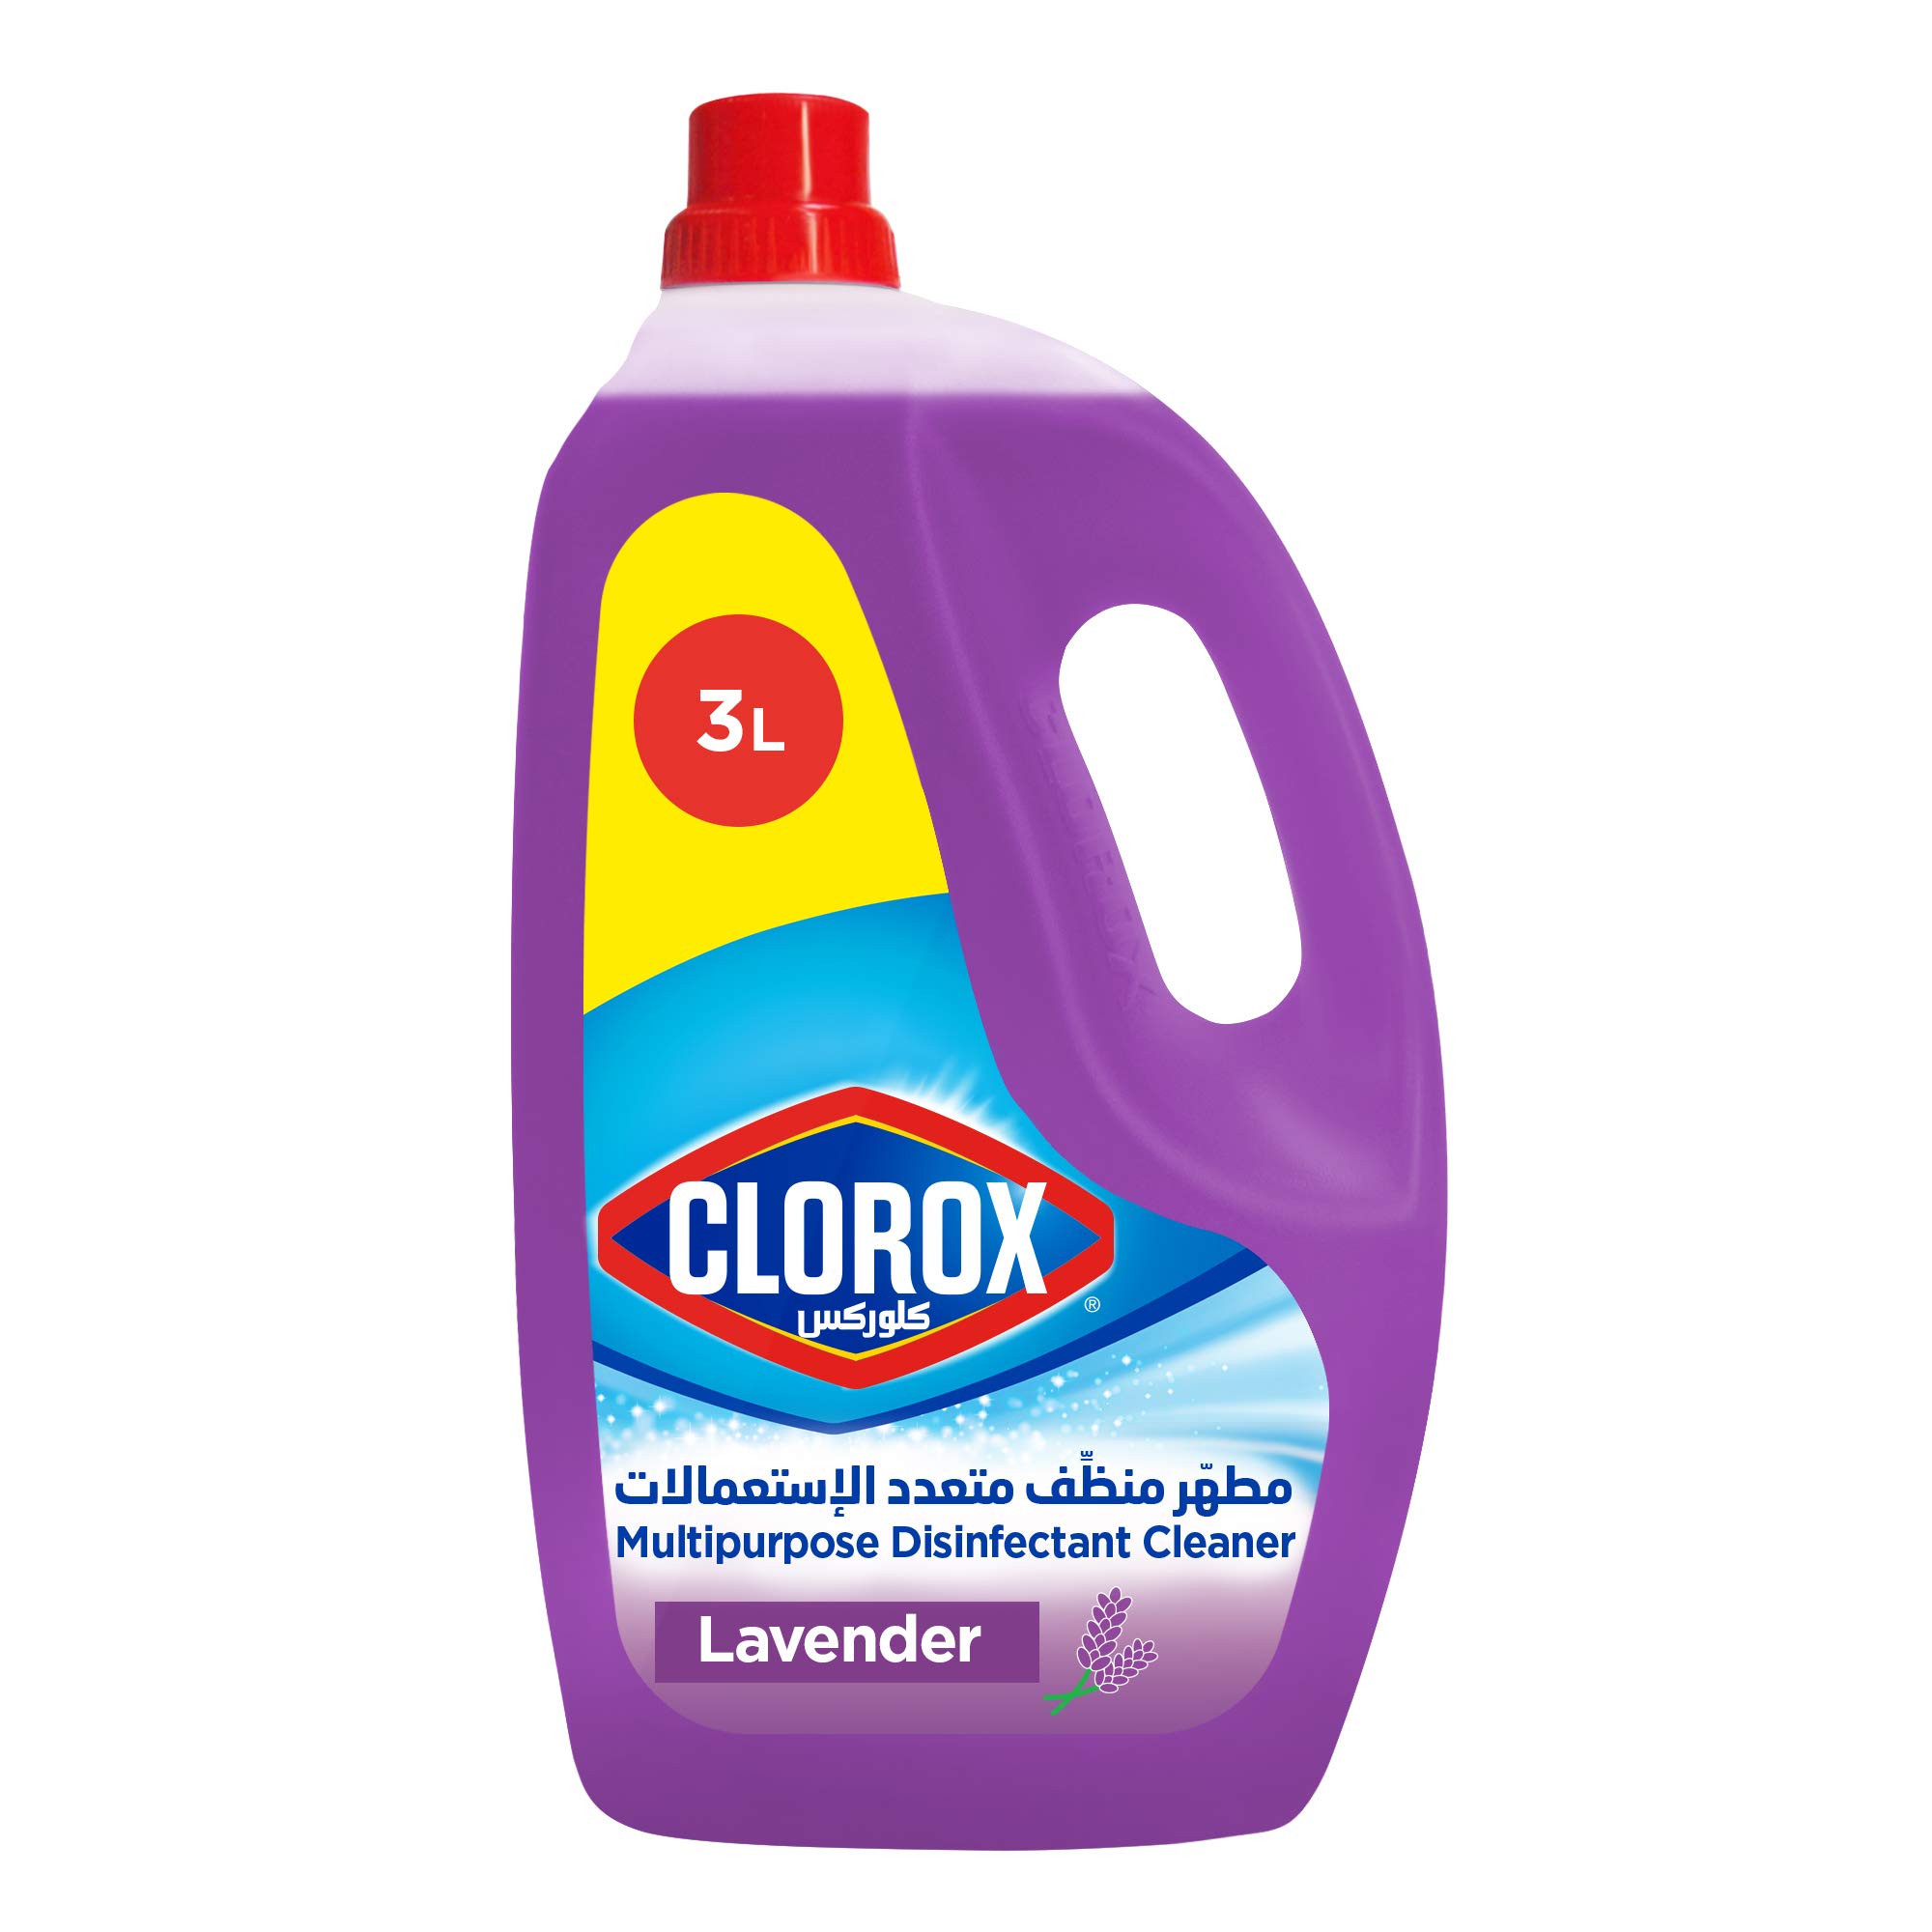 Clorox Multipurpose Disinfectant Cleaner Lavender 3L 